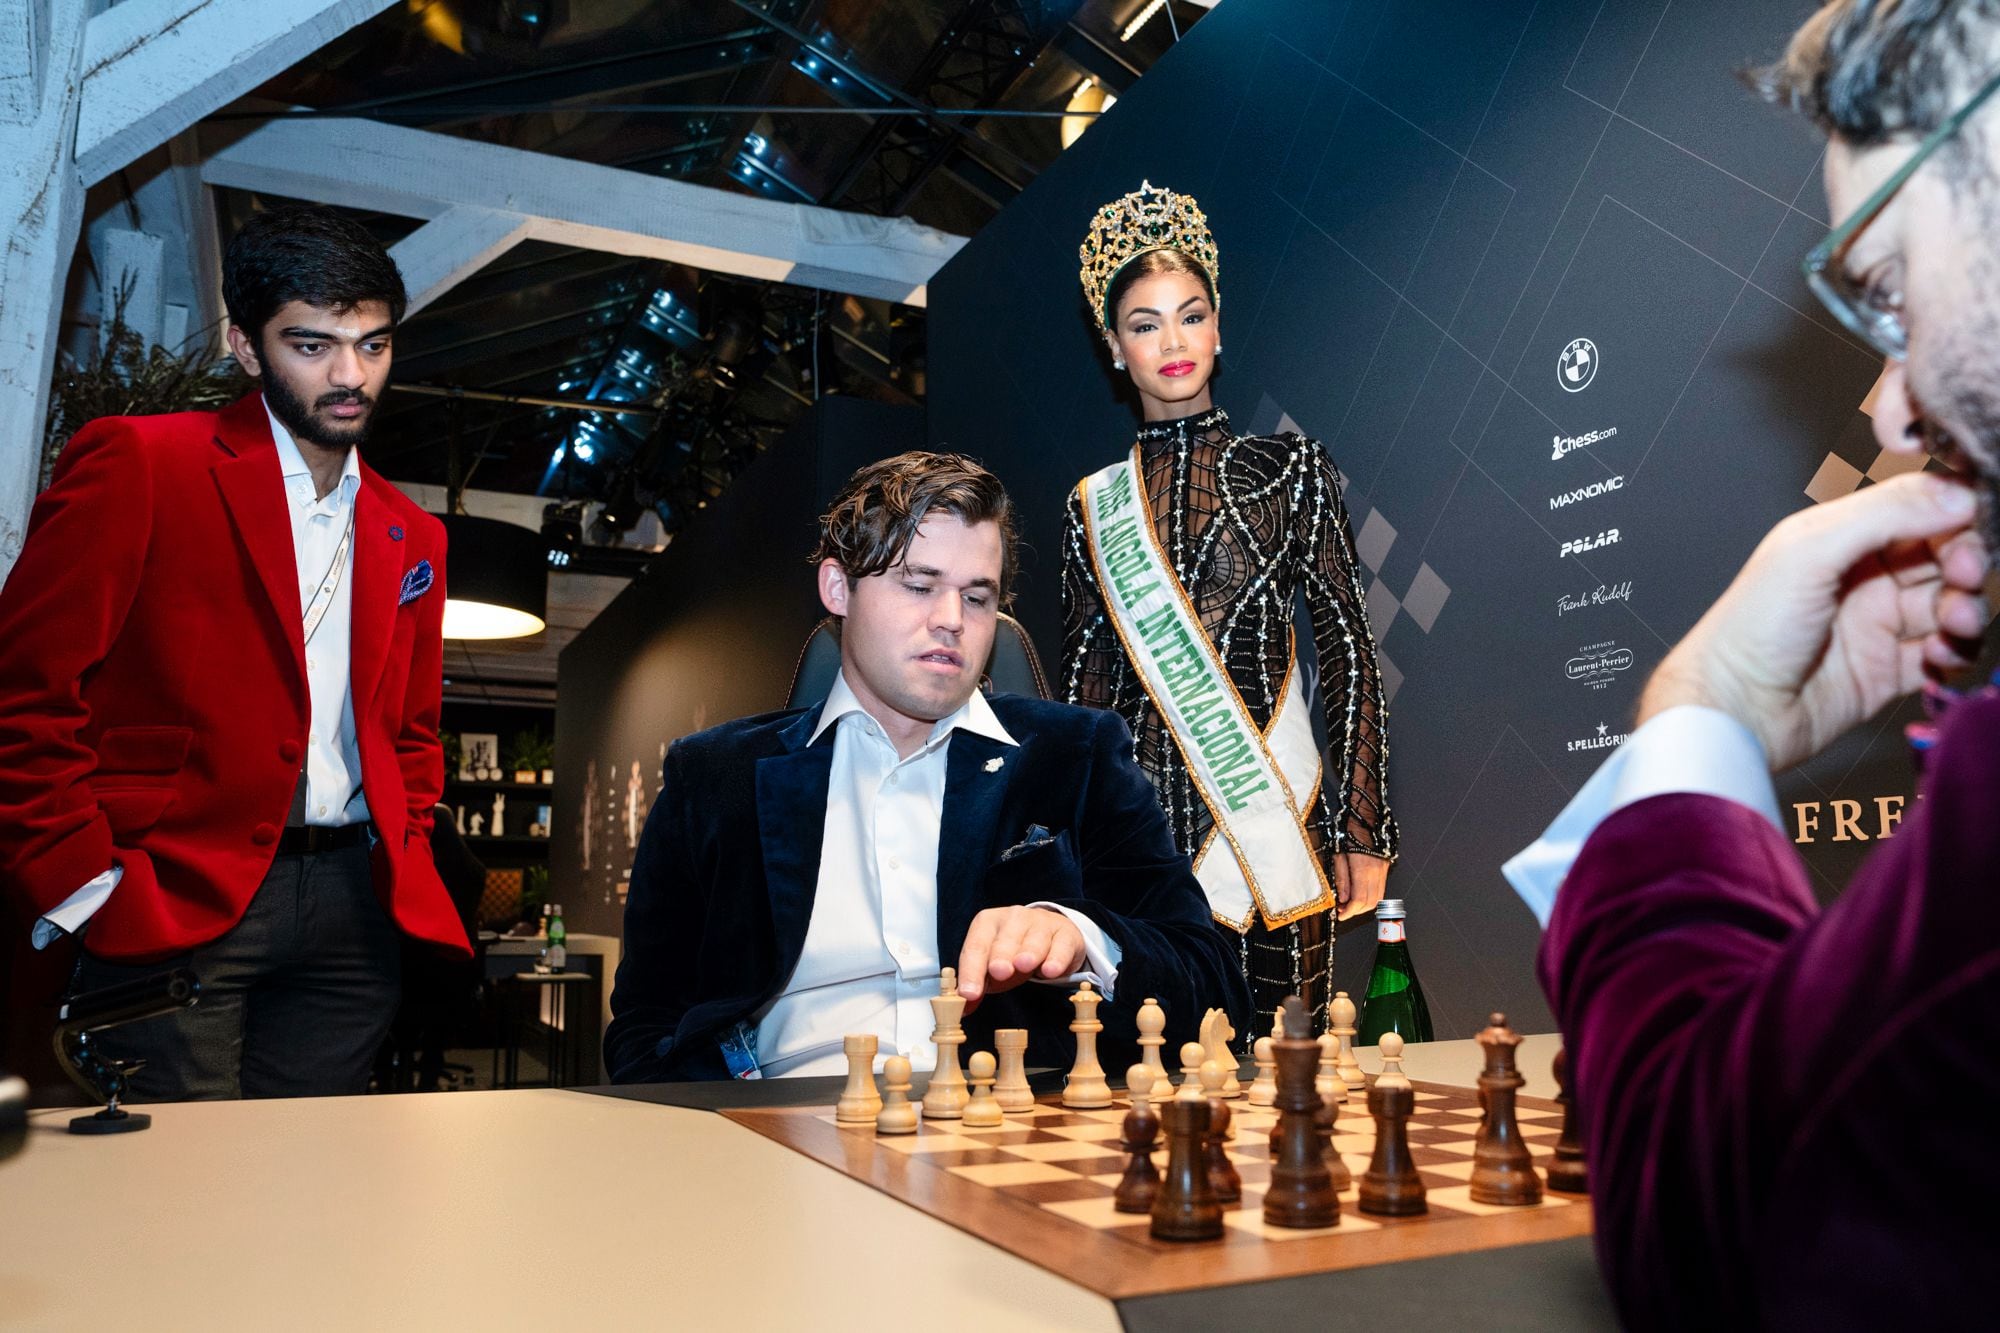 carlsen y un mecenas apuestan por una modalidad revolucionaria del ajedrez